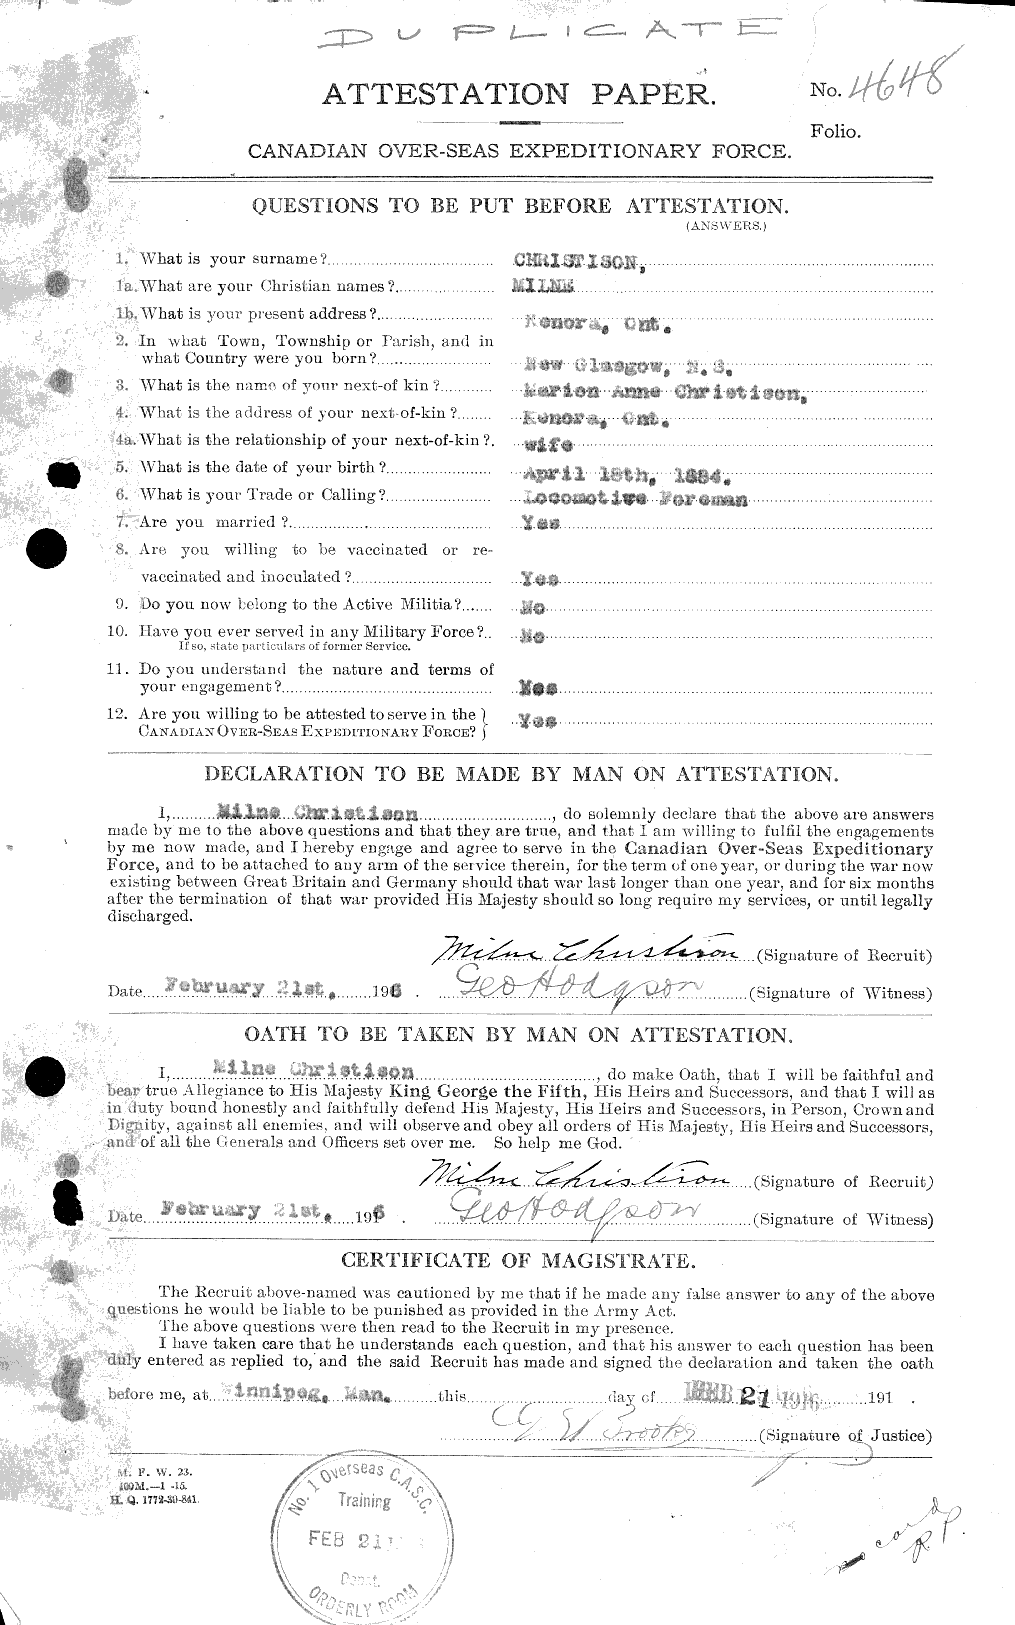 Dossiers du Personnel de la Première Guerre mondiale - CEC 022125a